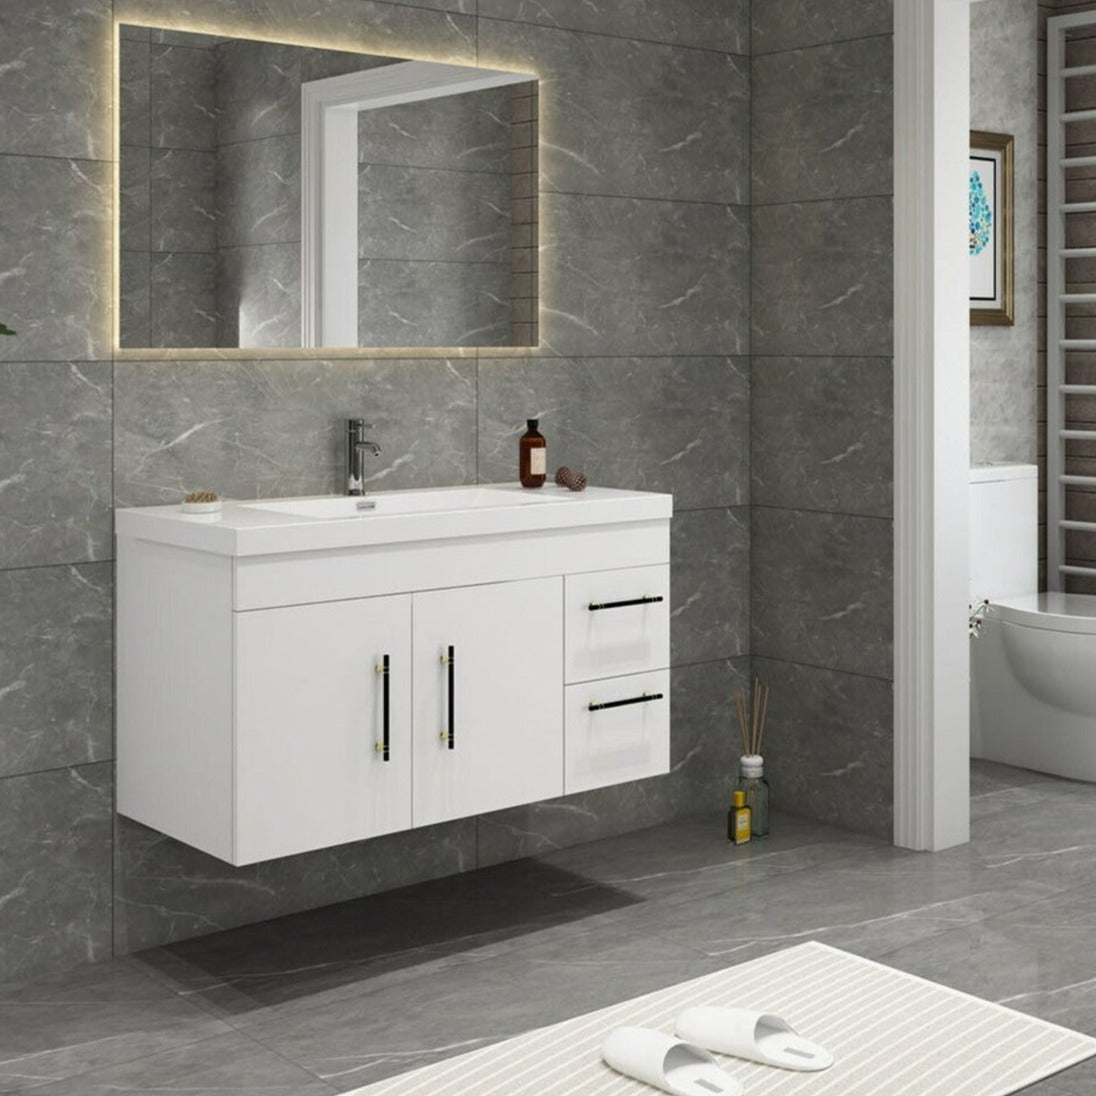 Elsa 42" Wall Mounted Bathroom Vanity with Reinforced Acrylic Sink